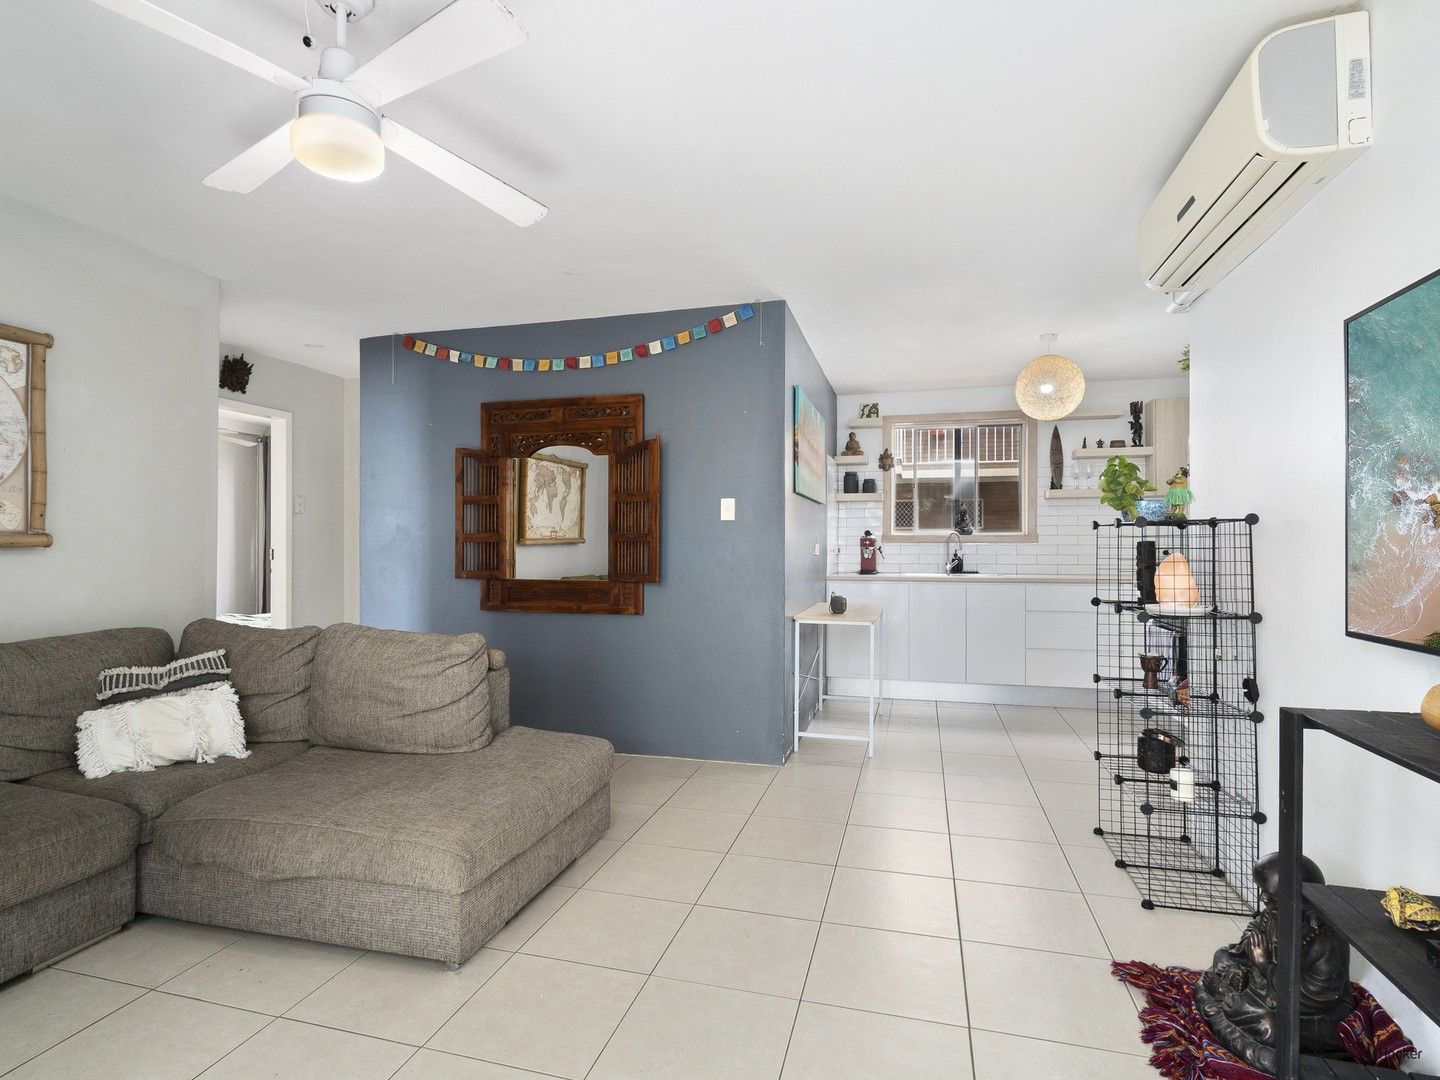 2 bedrooms Apartment / Unit / Flat in 3/26A Eden Avenue COOLANGATTA QLD, 4225